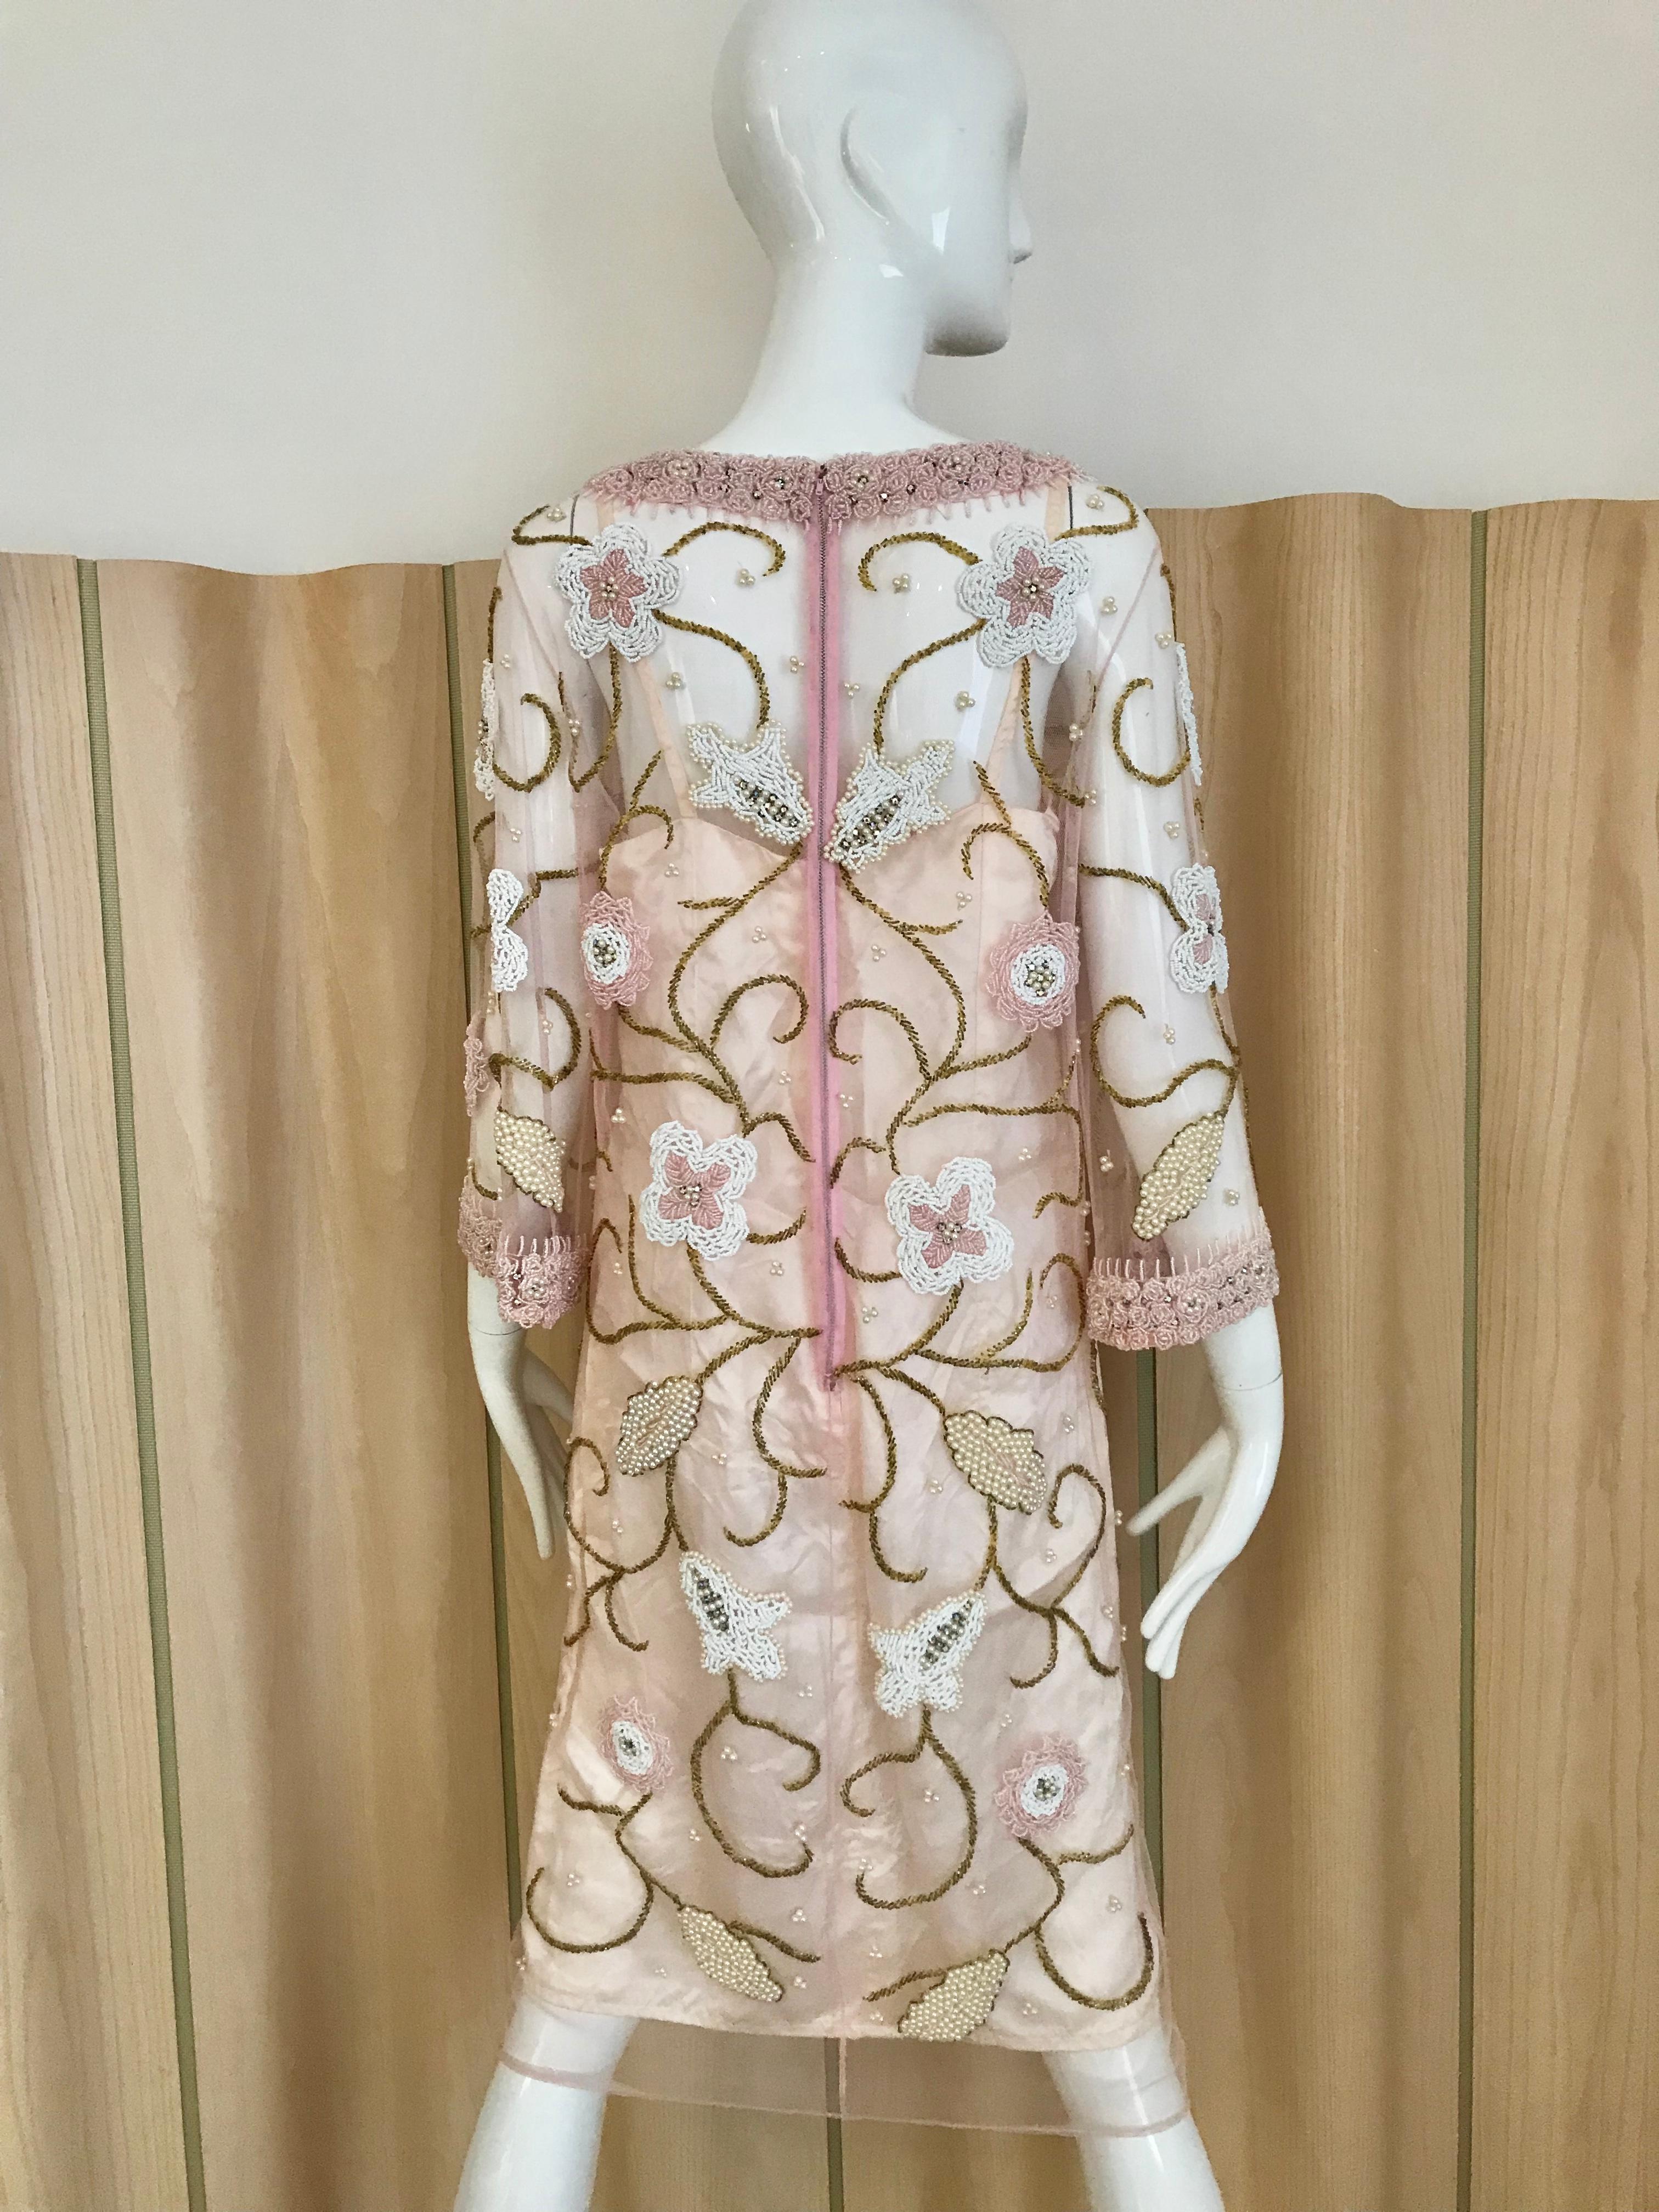 Schöne Vintage 60s Pink Sheer Mesh Tunika mit Perlen in weiß, rosa und gold Blumen Perlen. Kragen und Ärmel sind mit rosa Perlen besetzt. Perfekt für eine Cocktailparty.
Tunika wird mit Slip geliefert.  
Büste:  38 Zoll/ Taille: 36 Zoll/ Hüfte 36